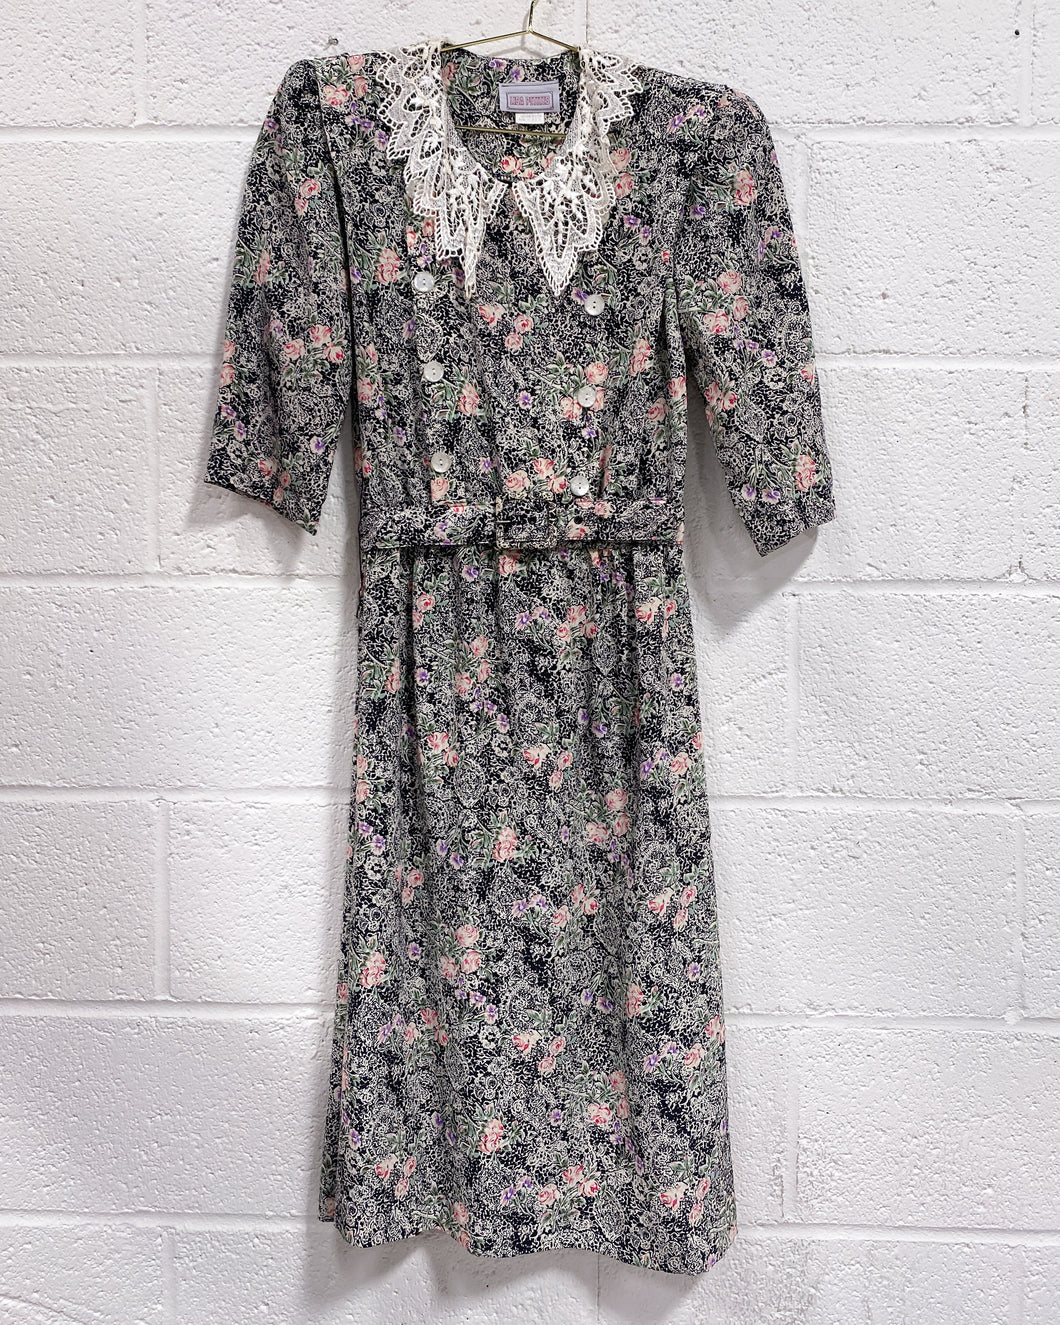 Vintage Floral Dress with Belt (6)